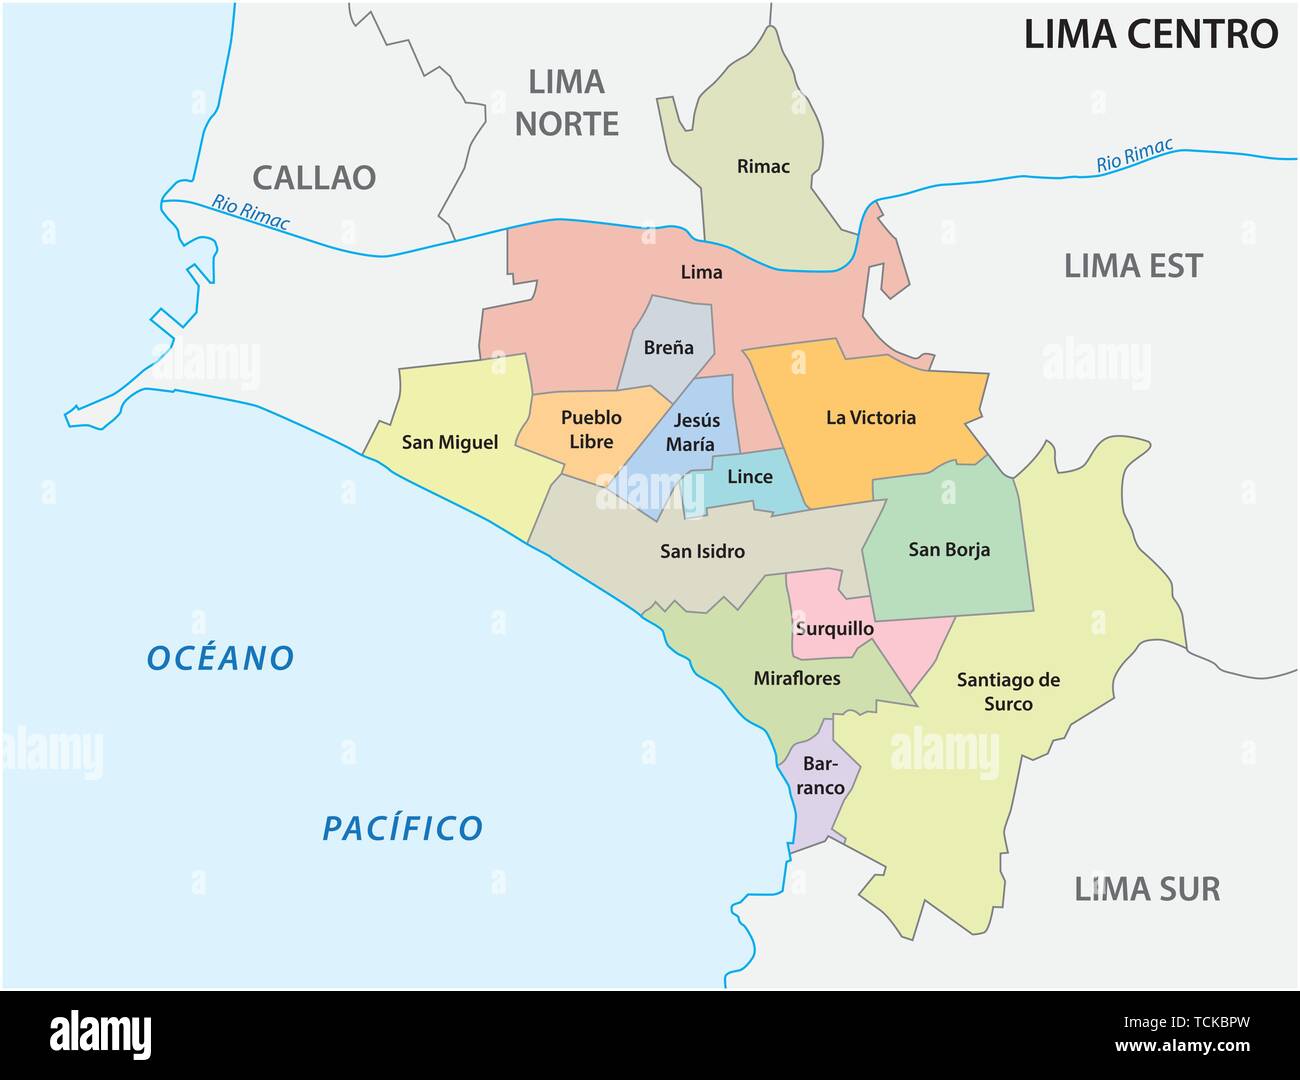 Lima Center Bereich administrative und politische Karte in spanischer Sprache Stock Vektor